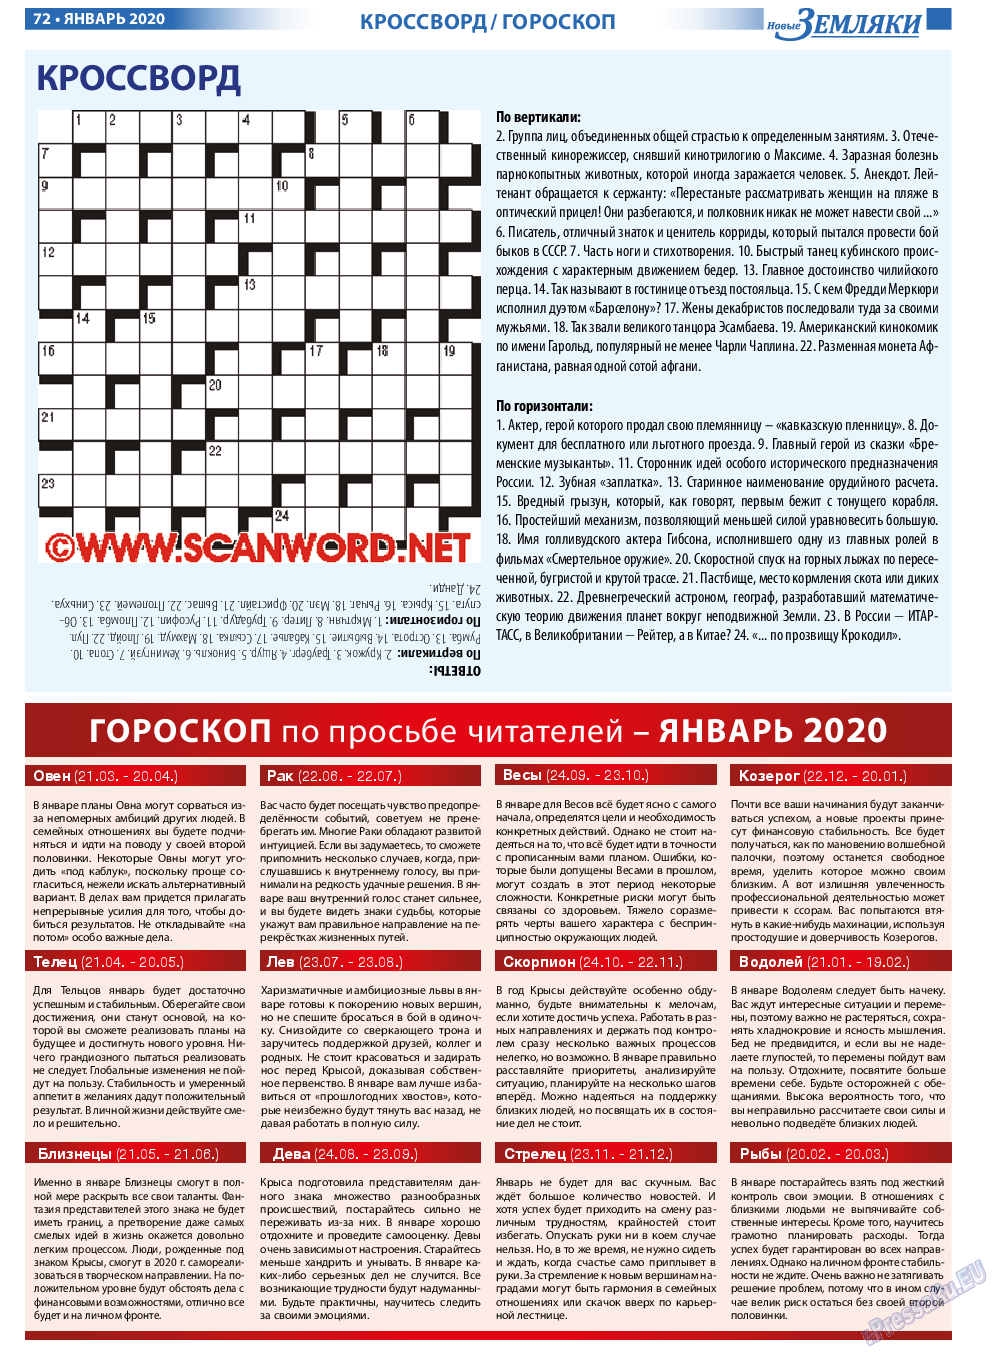 Новые Земляки, газета. 2020 №1 стр.72